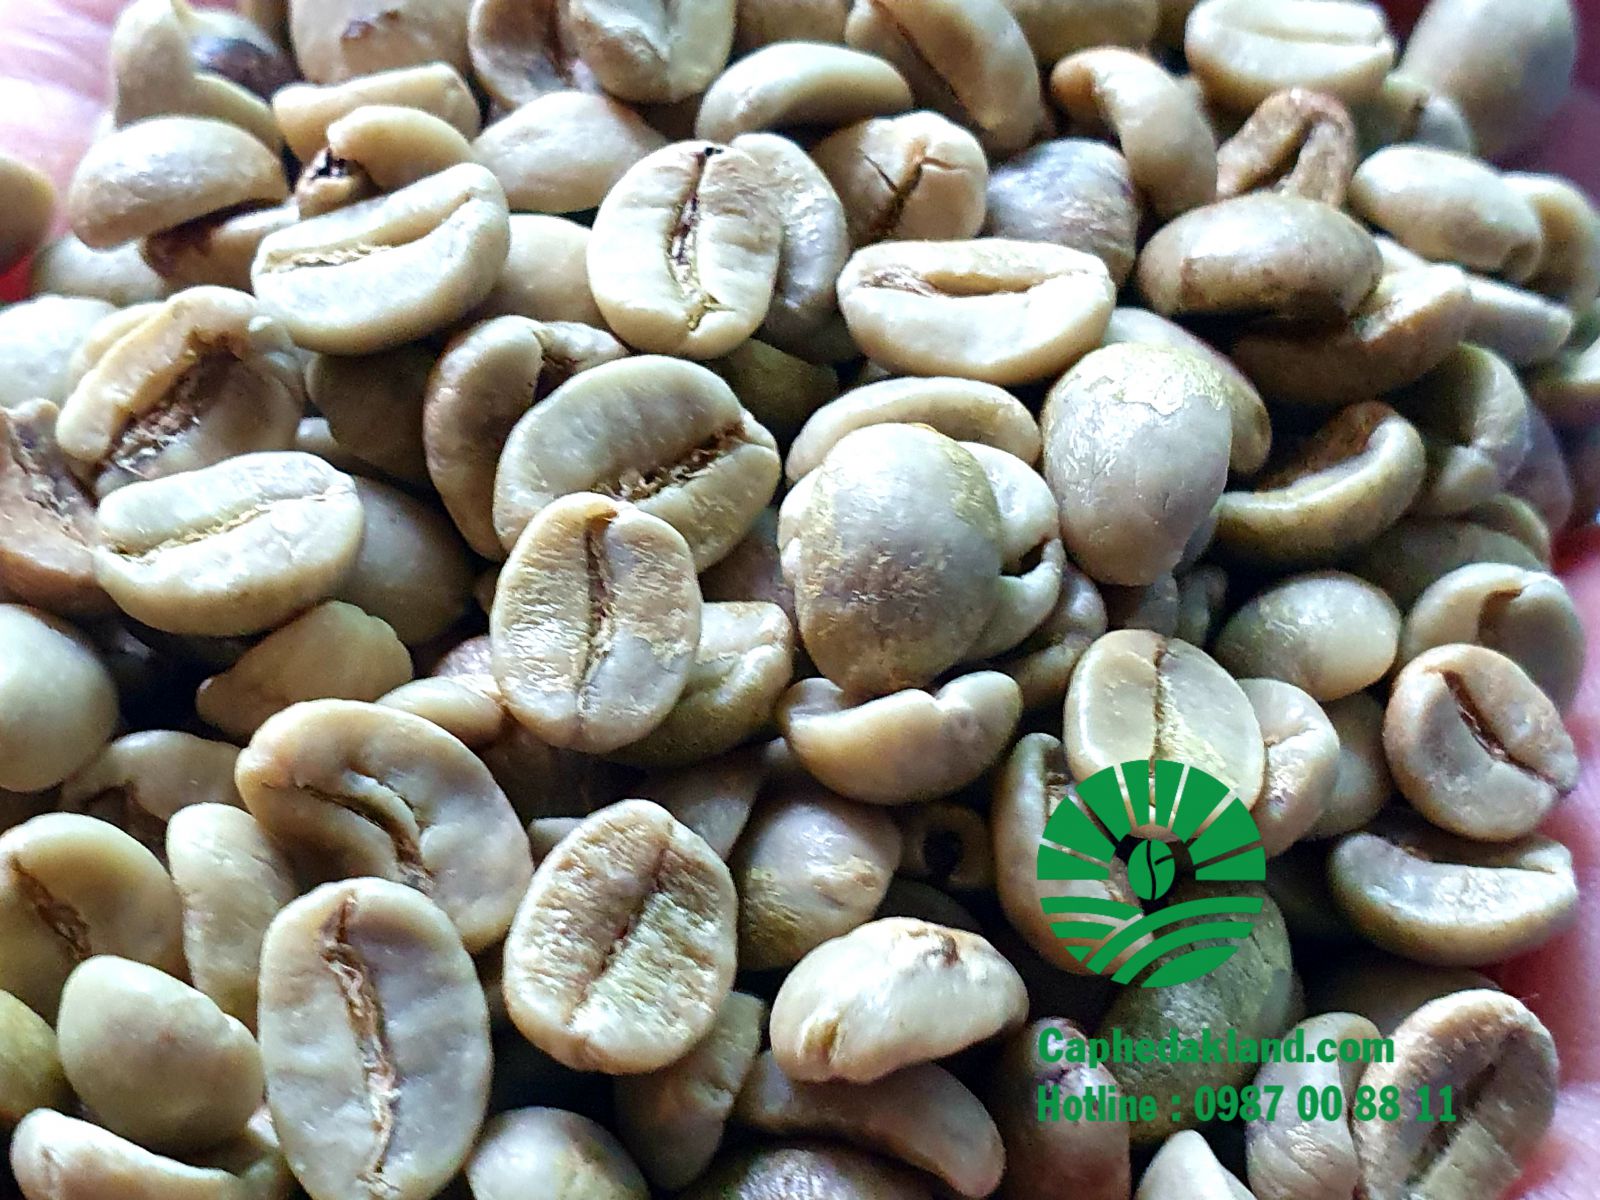 CÀ PHÊ SẠCH ARABICA CẦU ĐẤT  Vị chua đặc trưng, hương thơm nhẹ, thích hợp dùng cho cà phê pha máy theo 